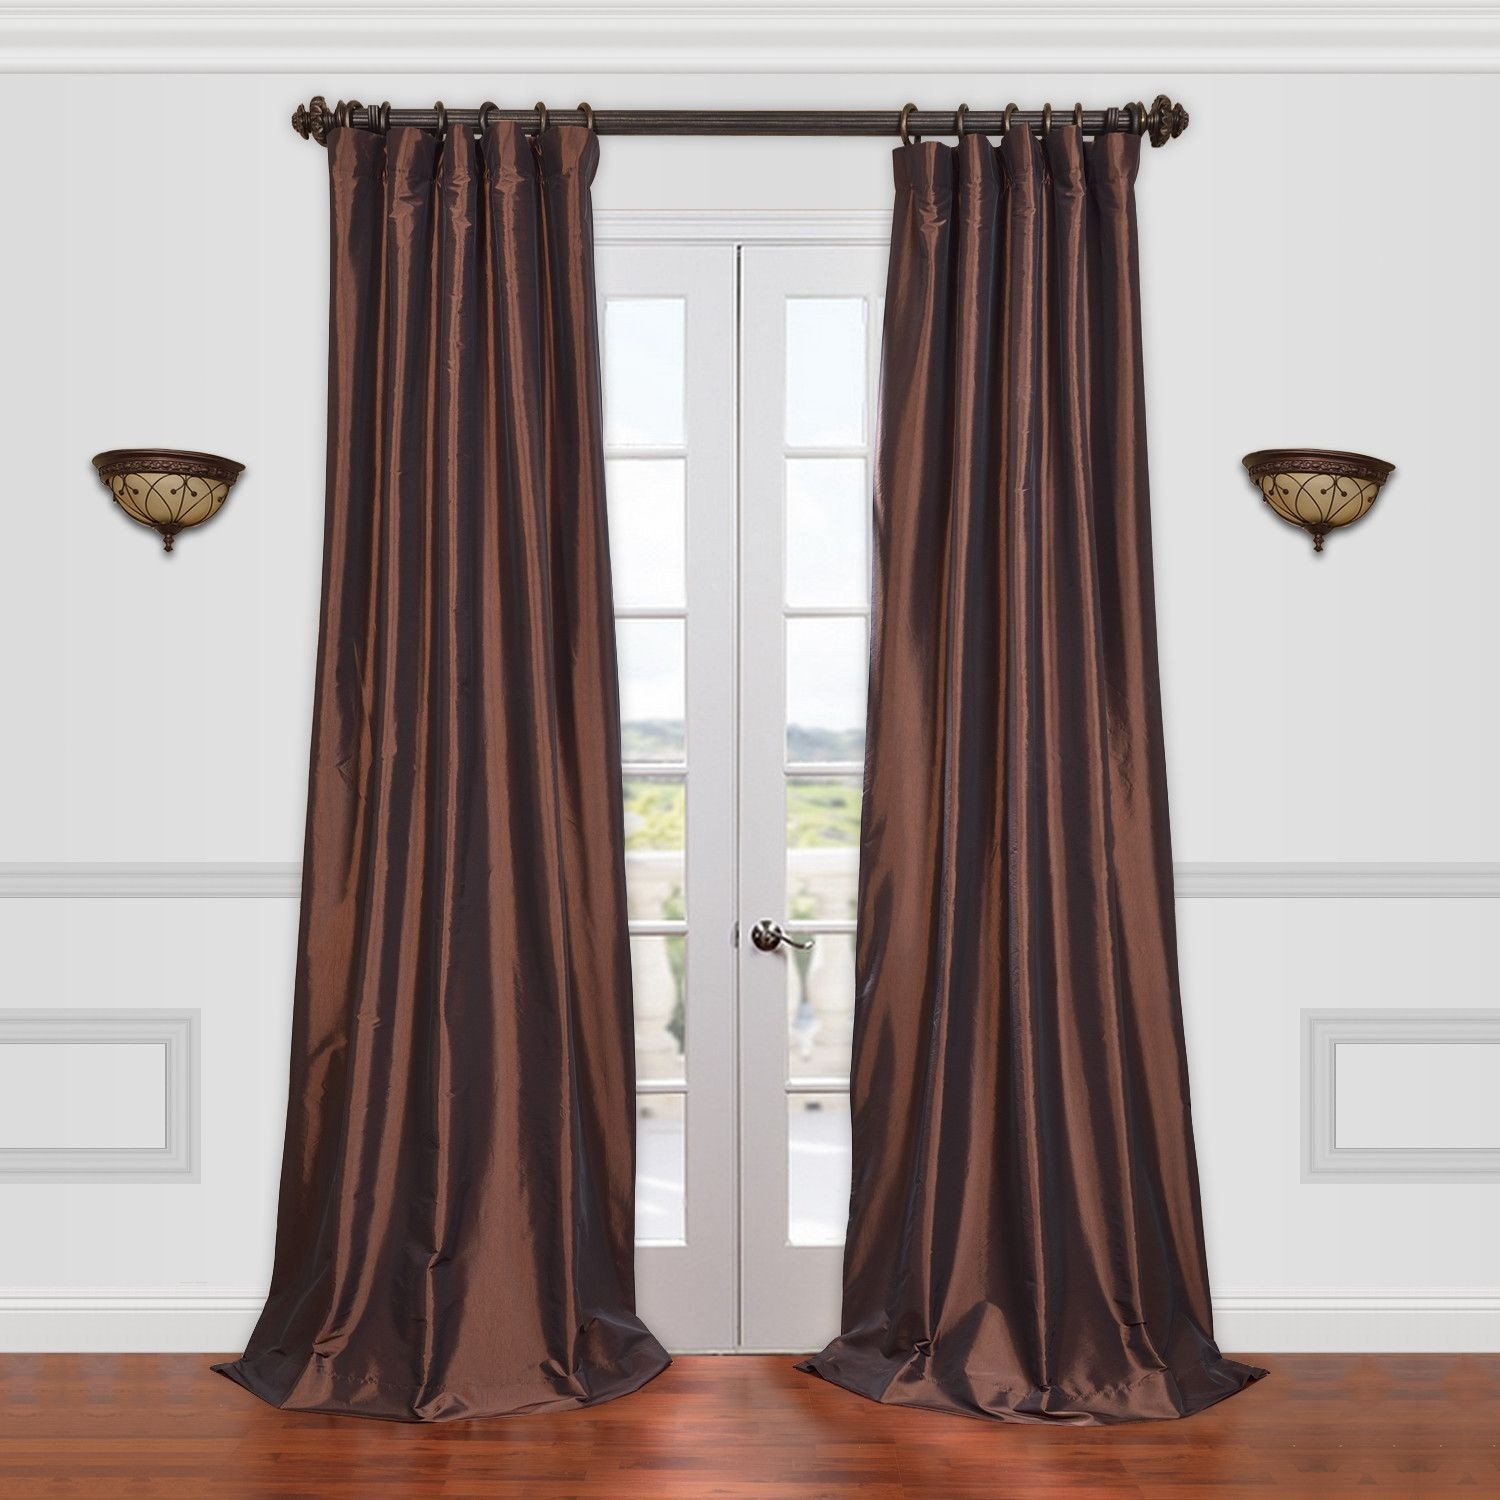 Orange faux silk curtains